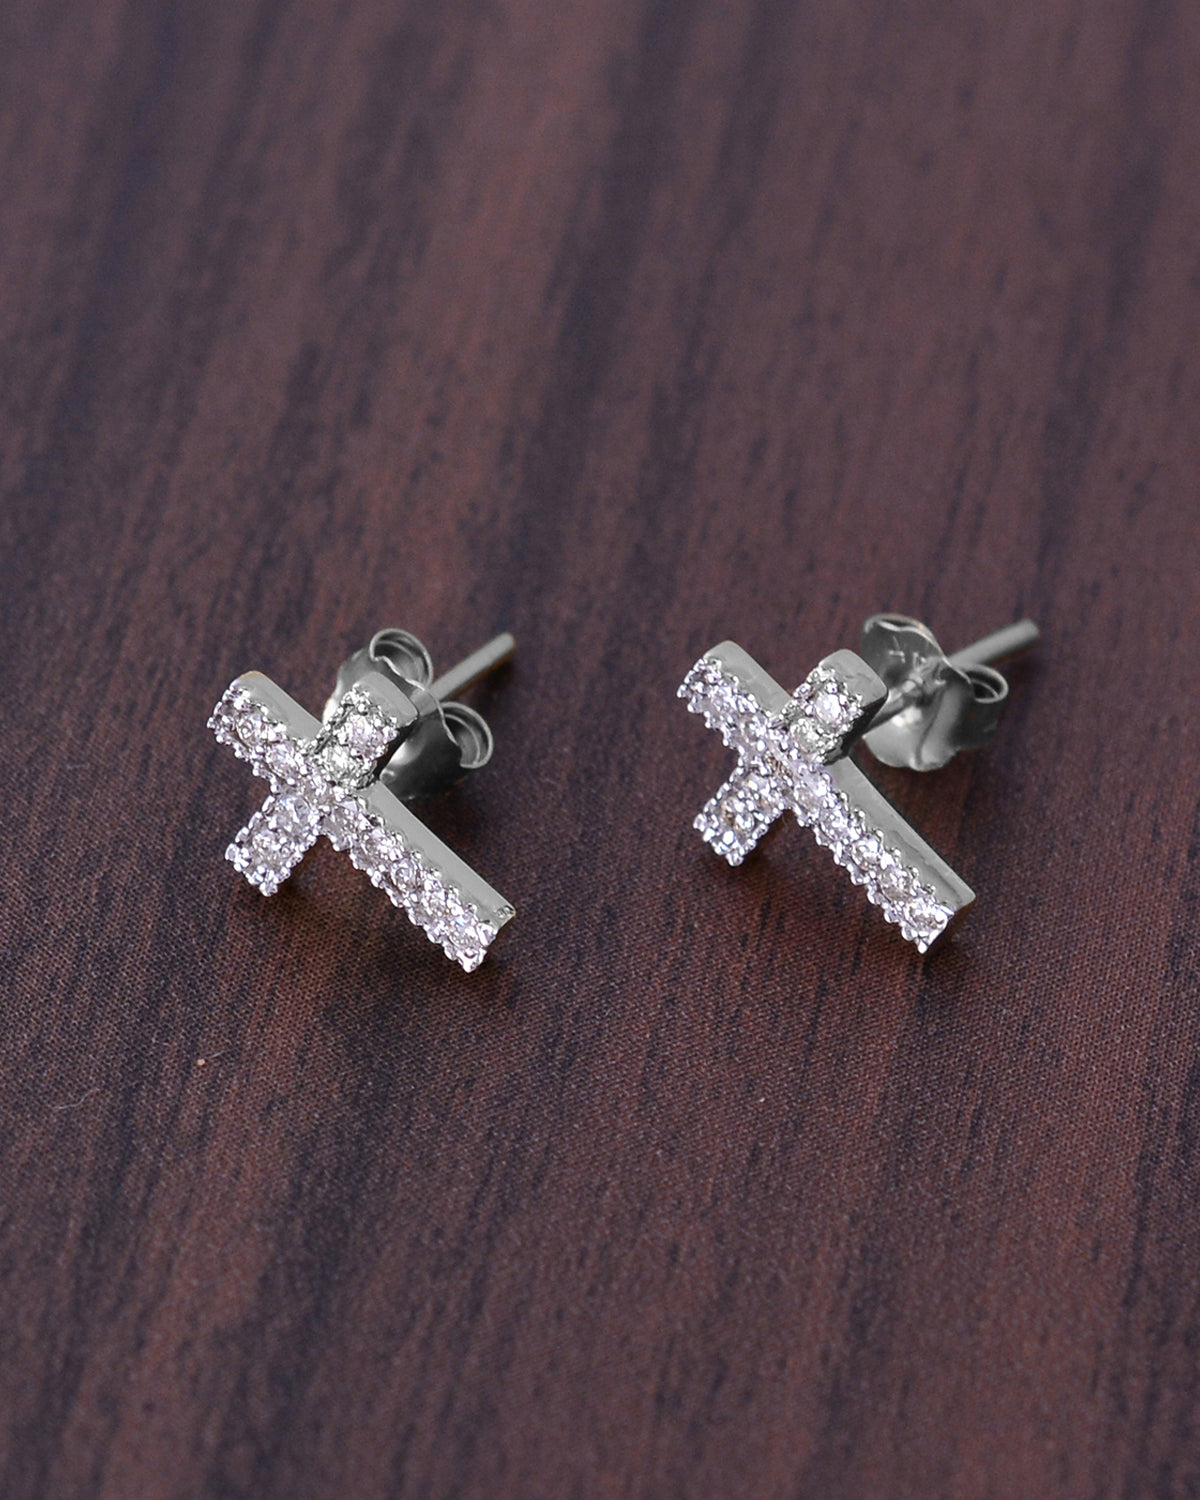 14K Gold Cross Diamond Stud Earrings